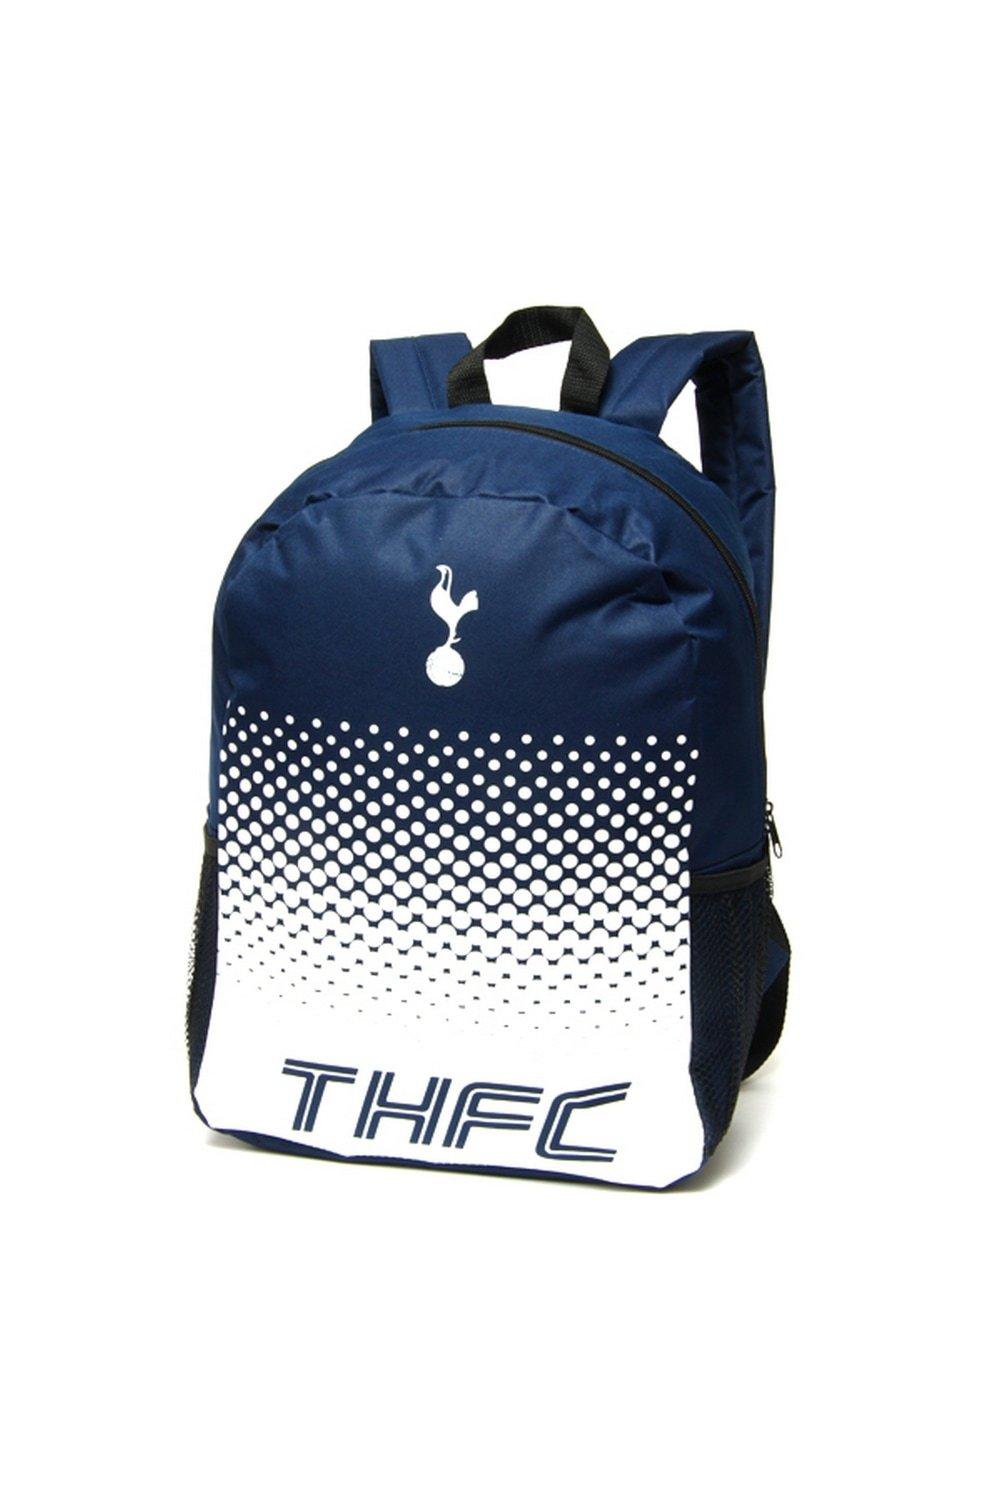 Официальный рюкзак Fade Football Crest Tottenham Hotspur FC, темно-синий printio футболка классическая официальная эмблема футбольного клуба тоттенхэм